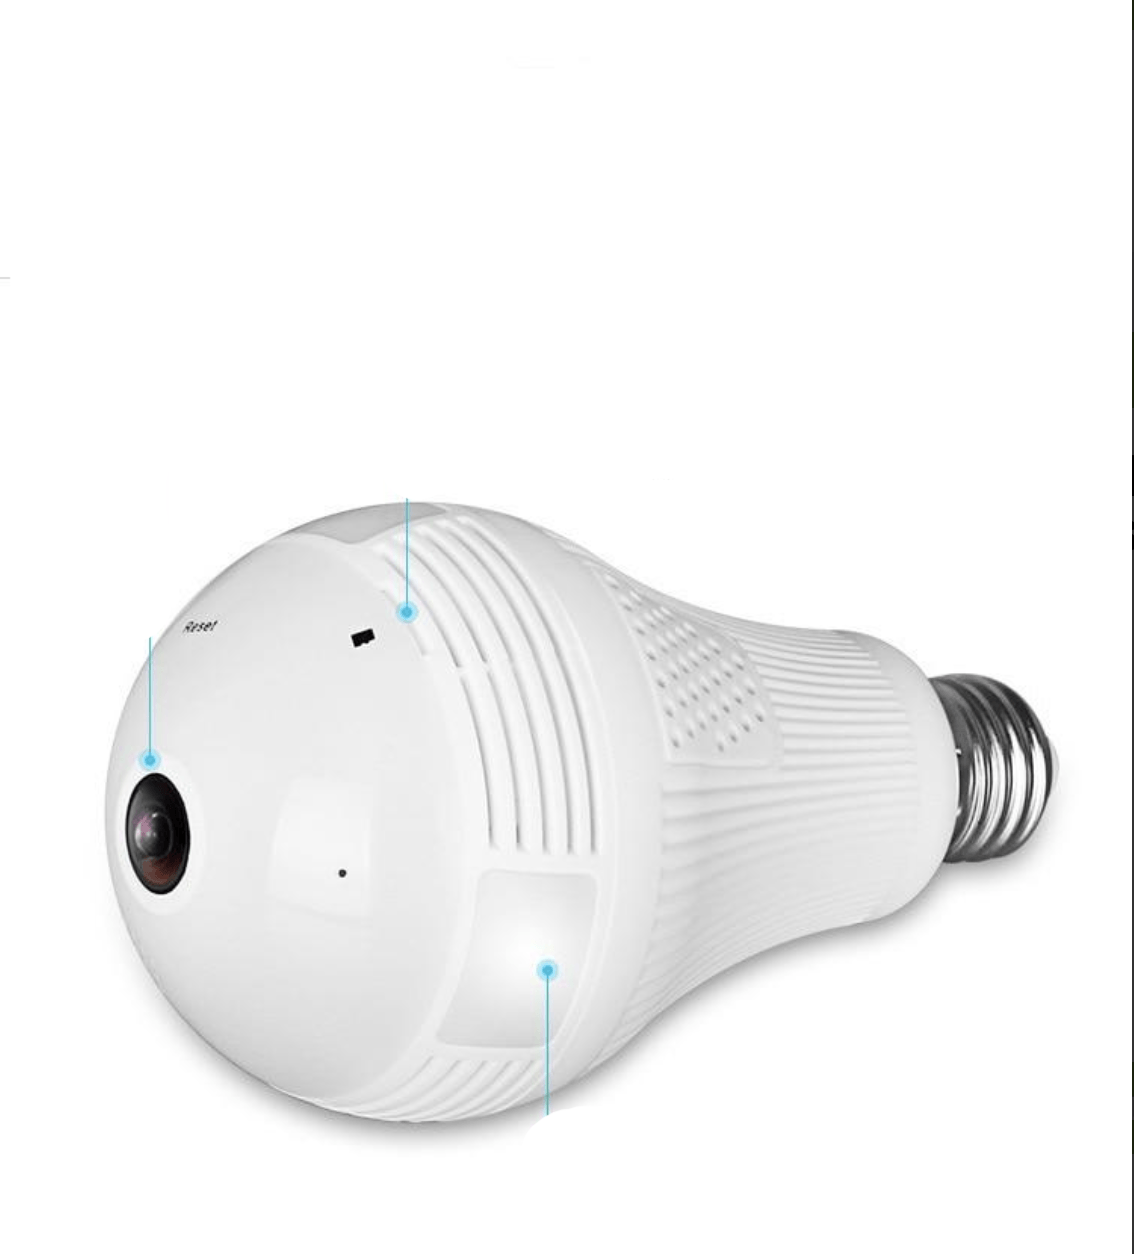 Lightbulb 360° Night Vision Infrared HD Camera